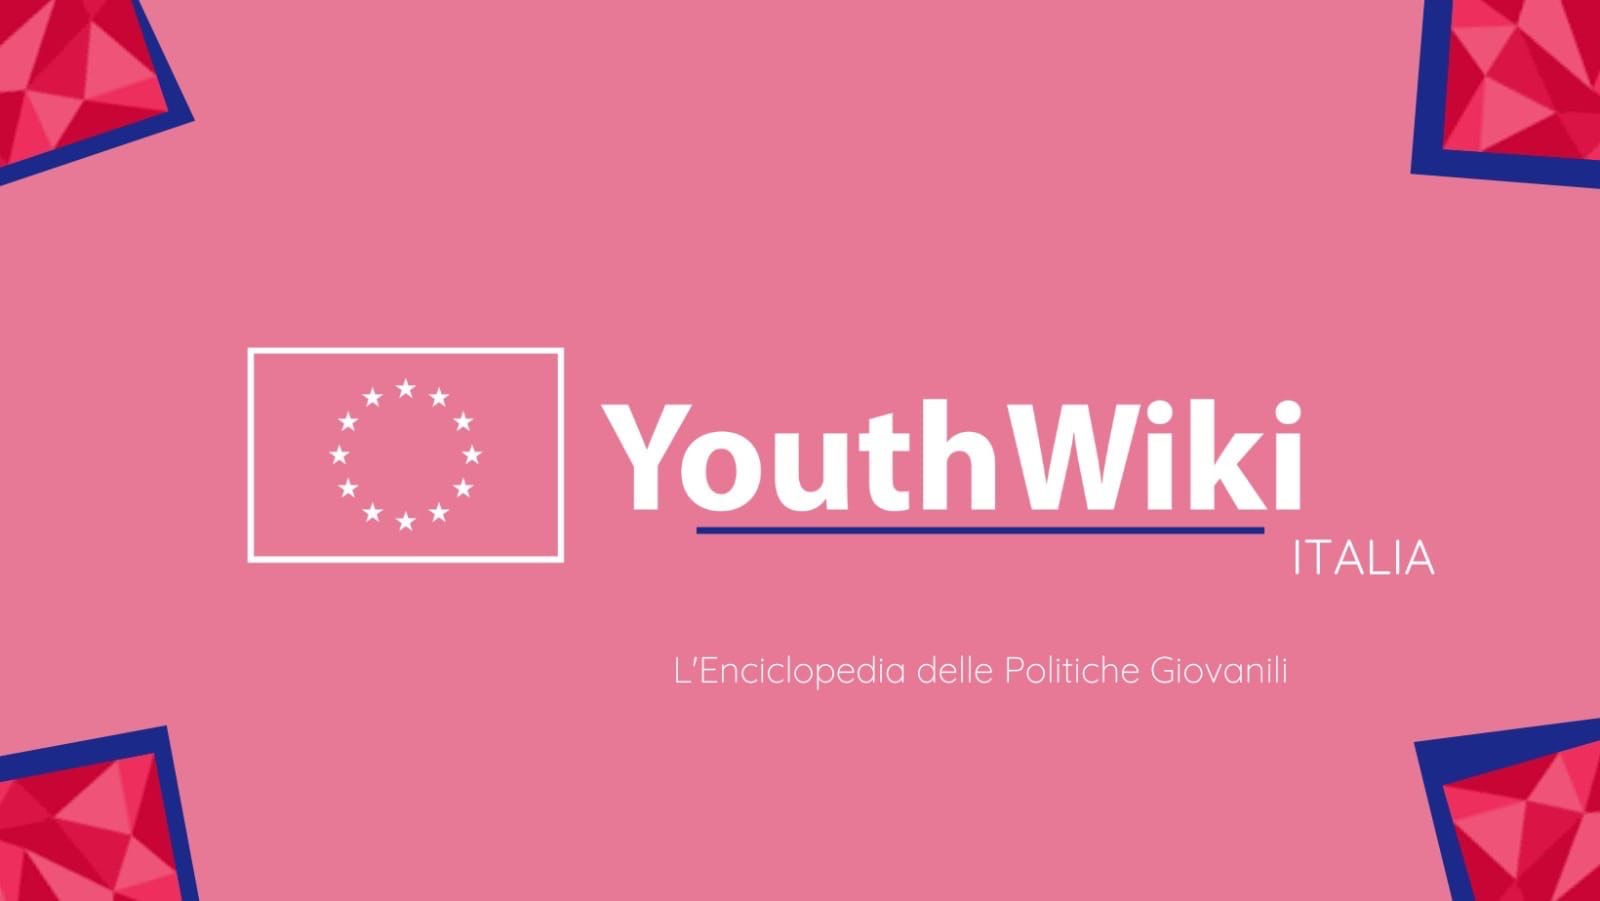 Youth Work in Italia: un ruolo centrale che parte da Salerno